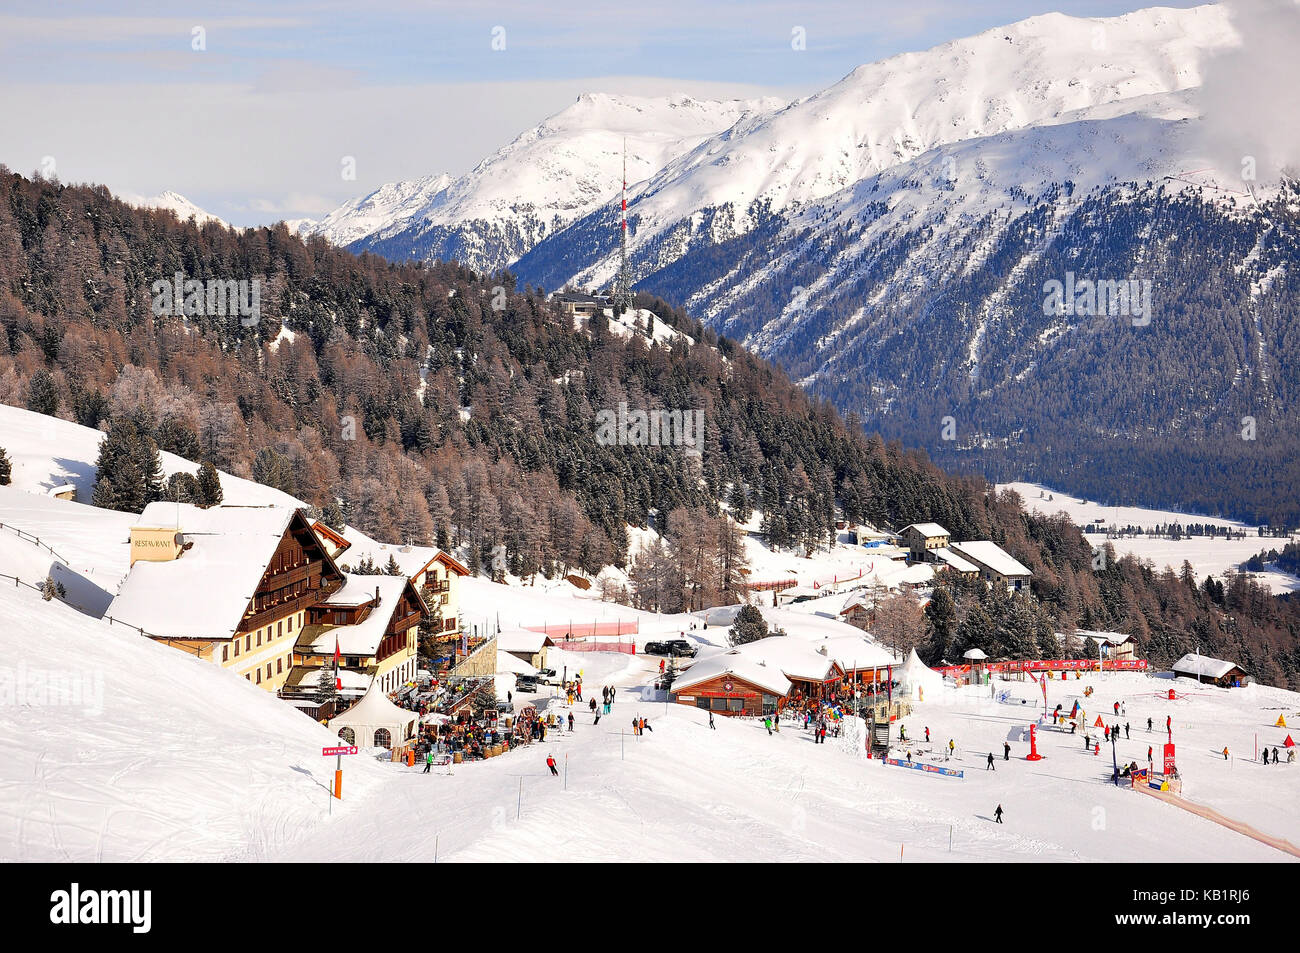 La Suisse, canton des Grisons, l'Engadine, st. MORITZ, salastrains, hôtel de sports d'hiver, chalet de ski, skieur, hiver, Banque D'Images